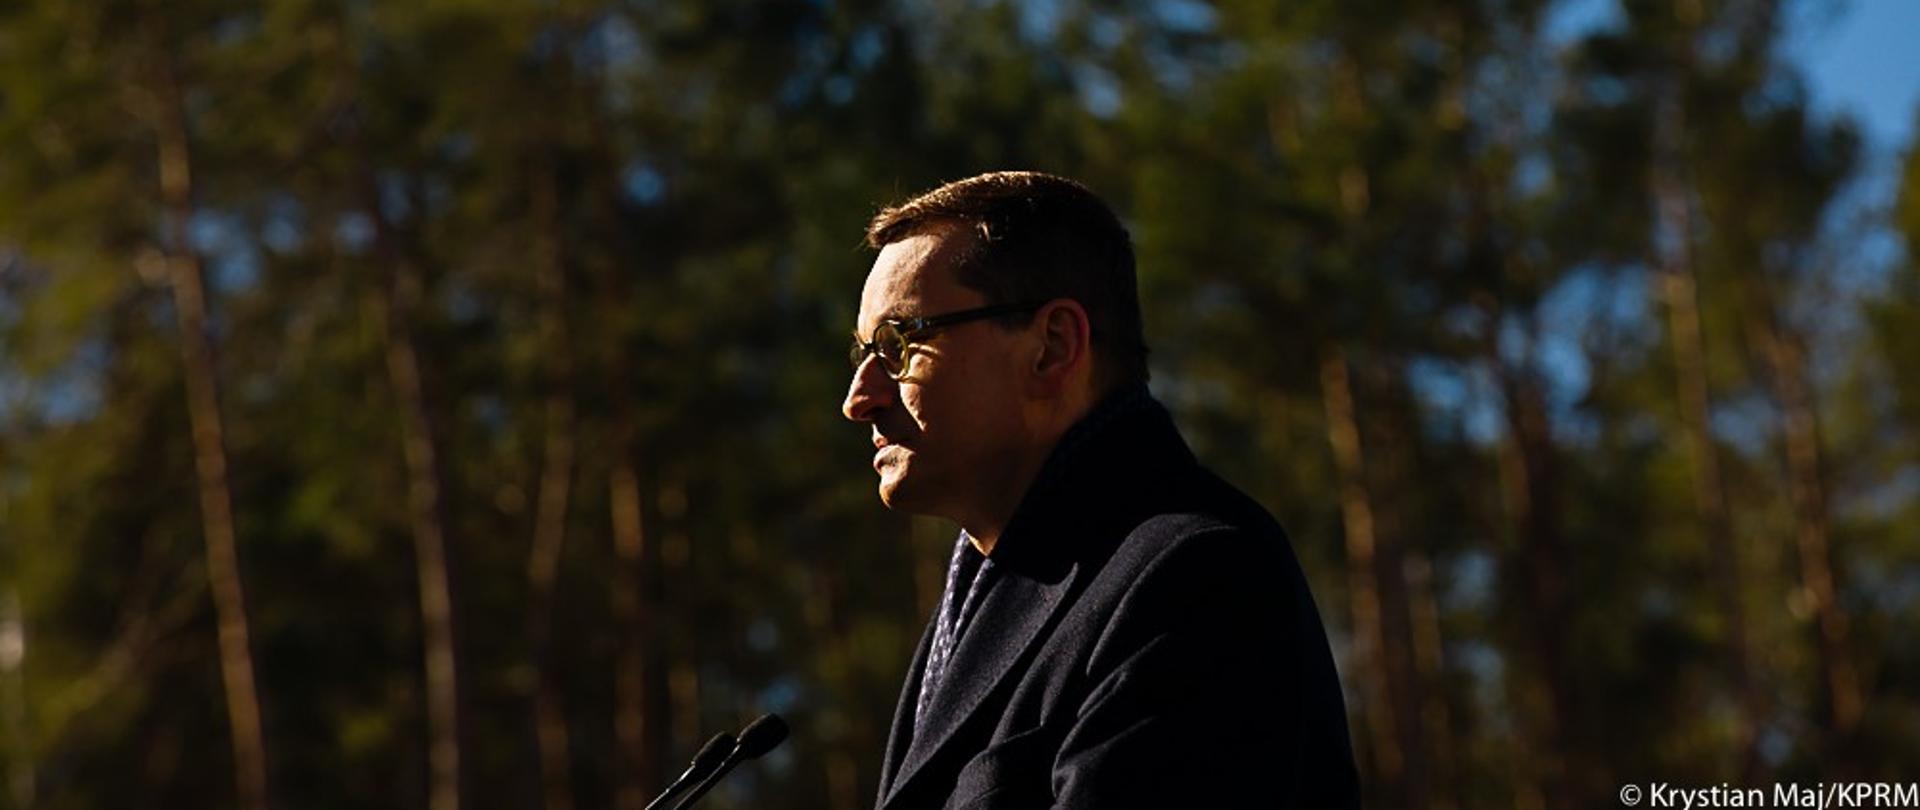 Premier Mateusz Morawiecki przy mikrofonie. W tle drzewa.